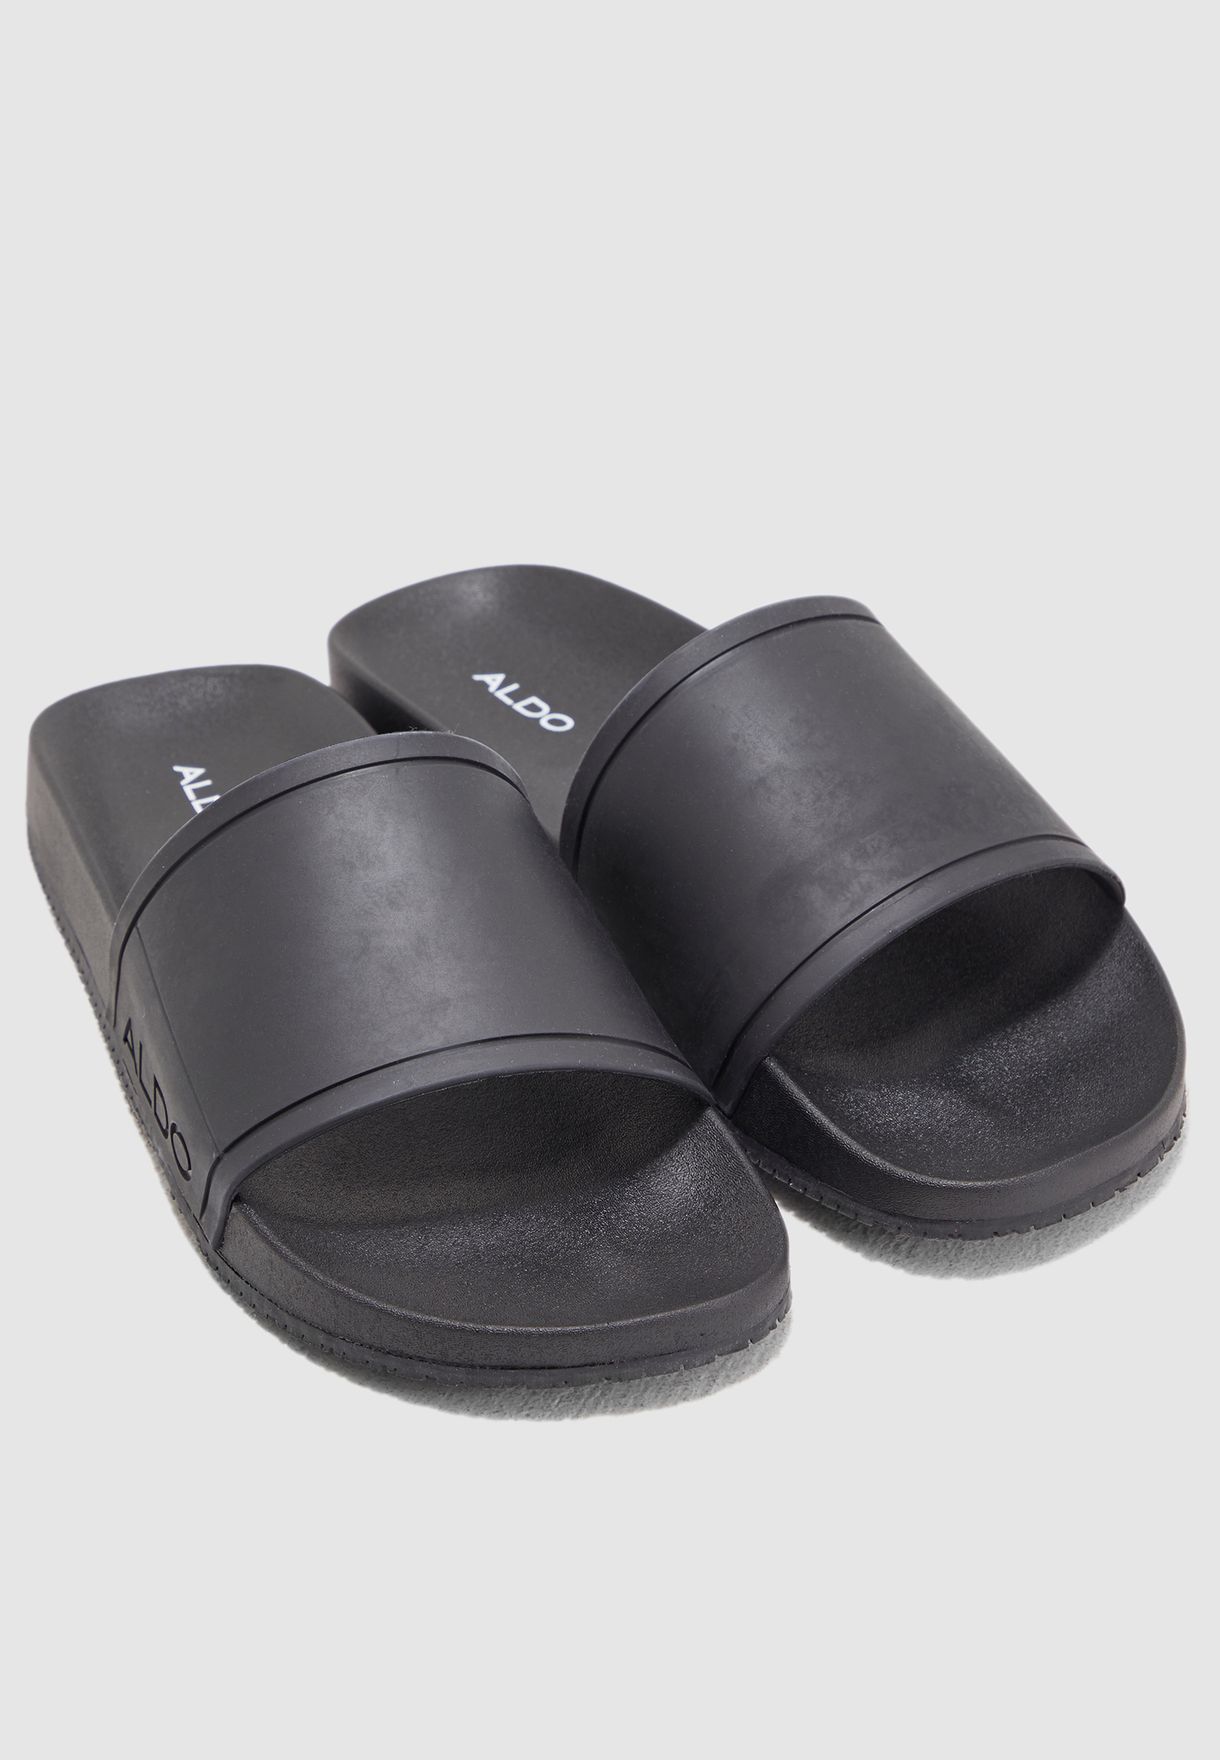 aldo men's slide sandals